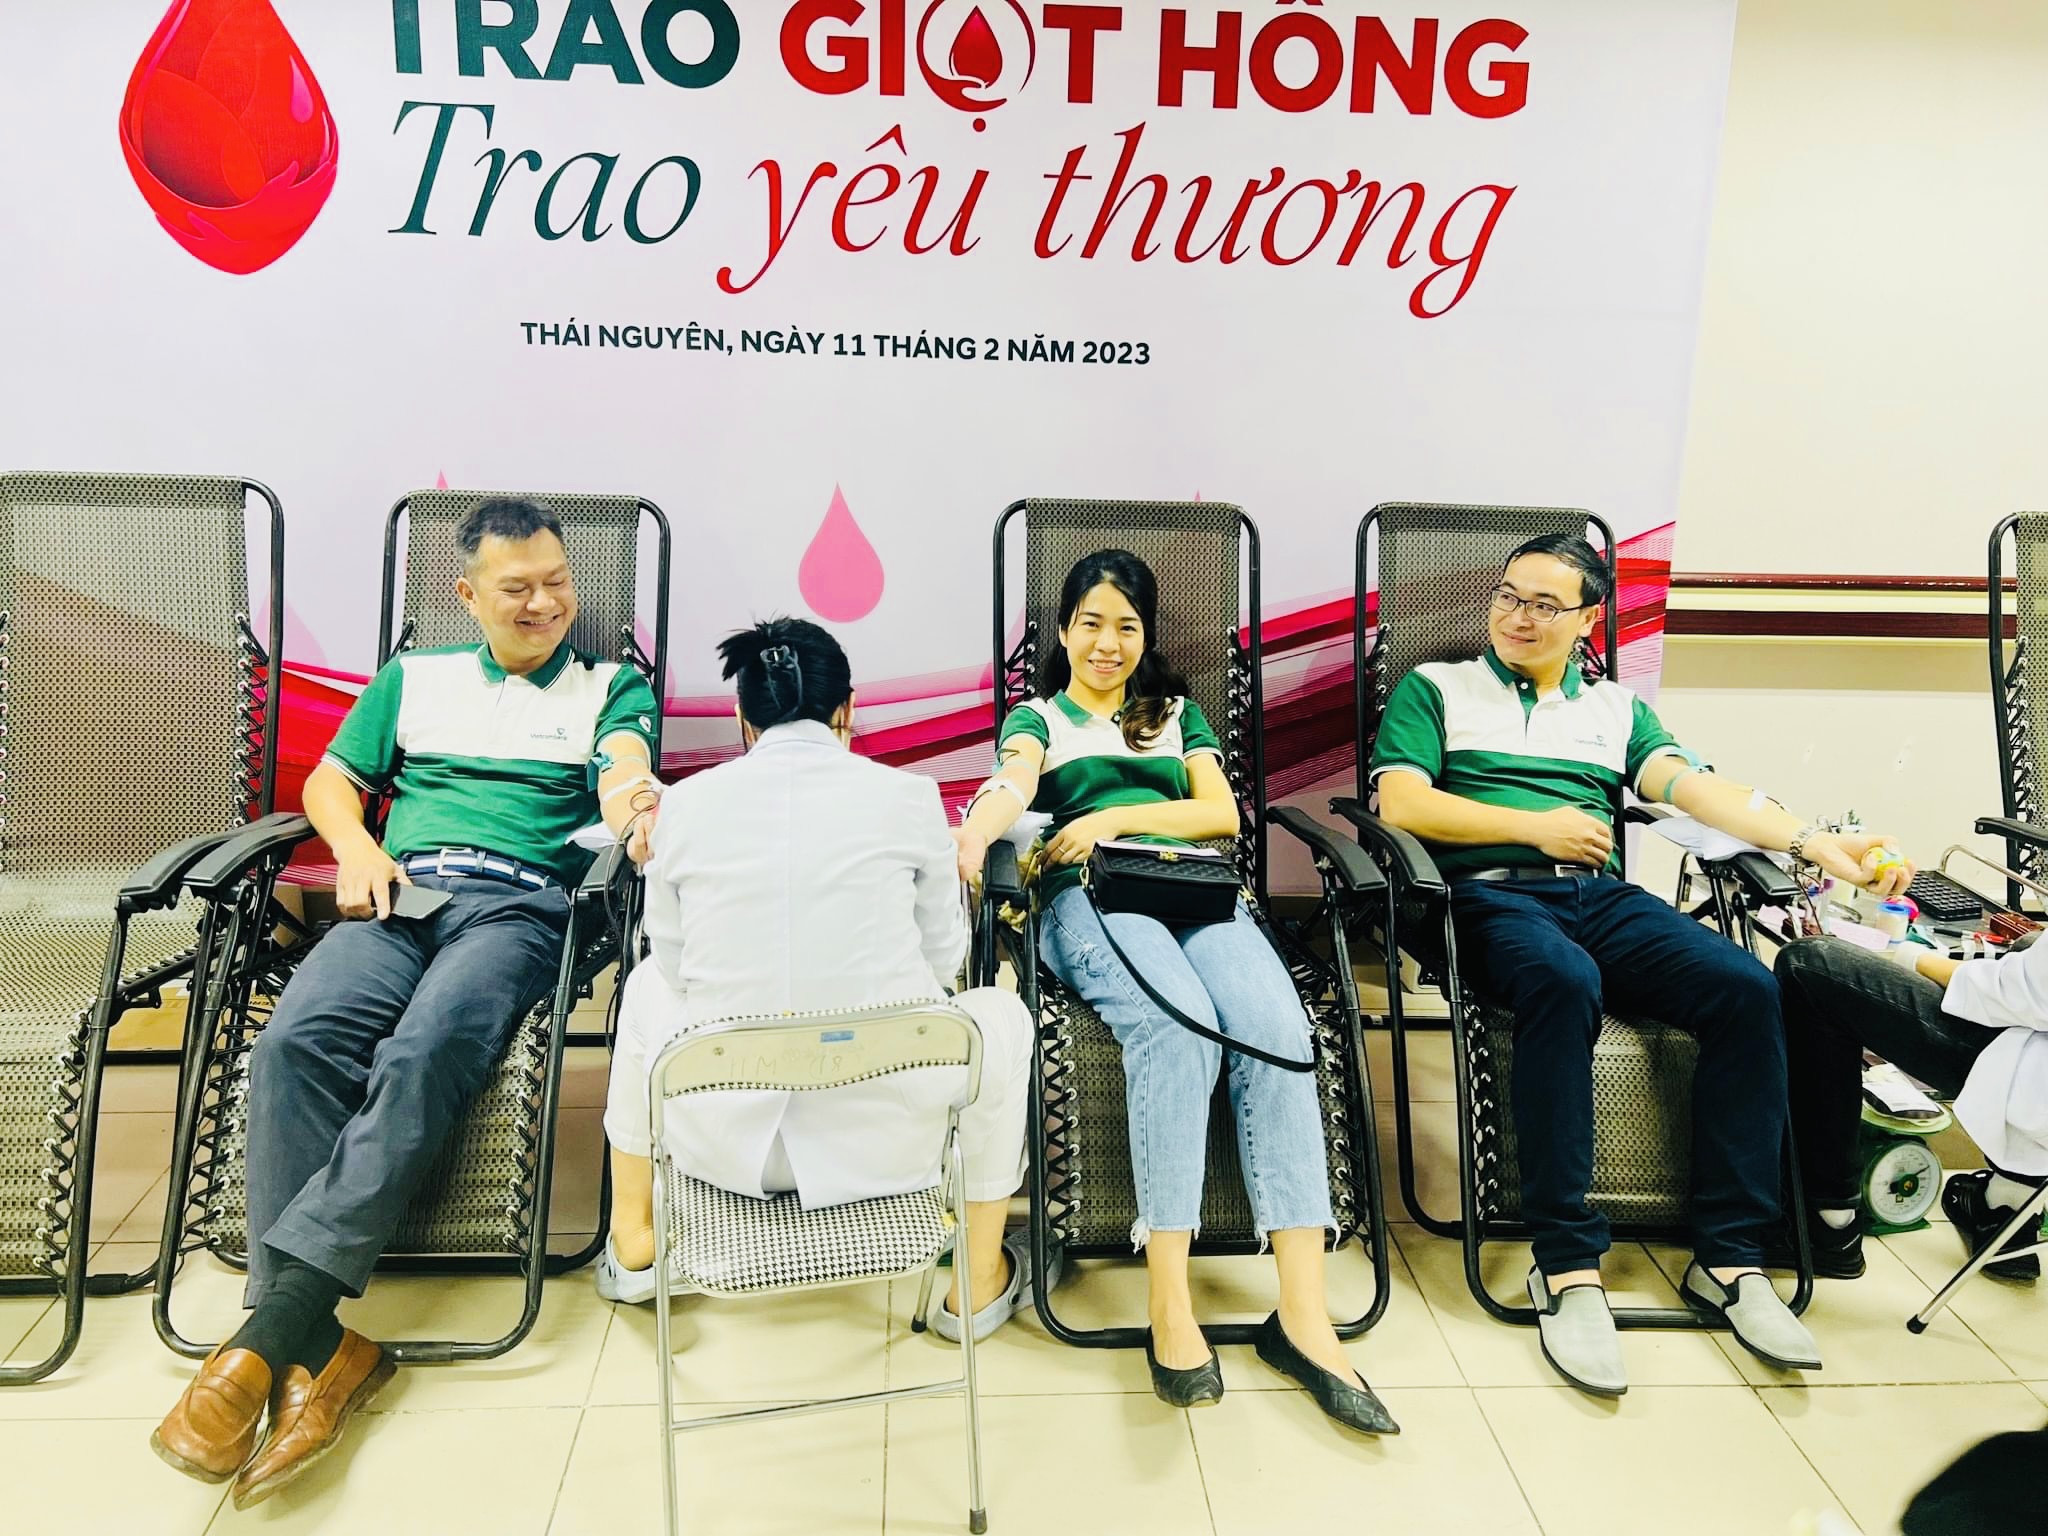 Đoàn cơ sở Vietcombank Thái Nguyên tổ chức chương trình hiến máu nhân đạo: “Vietcombank 60 năm: Trao giọt hồng - Trao yêu thương”